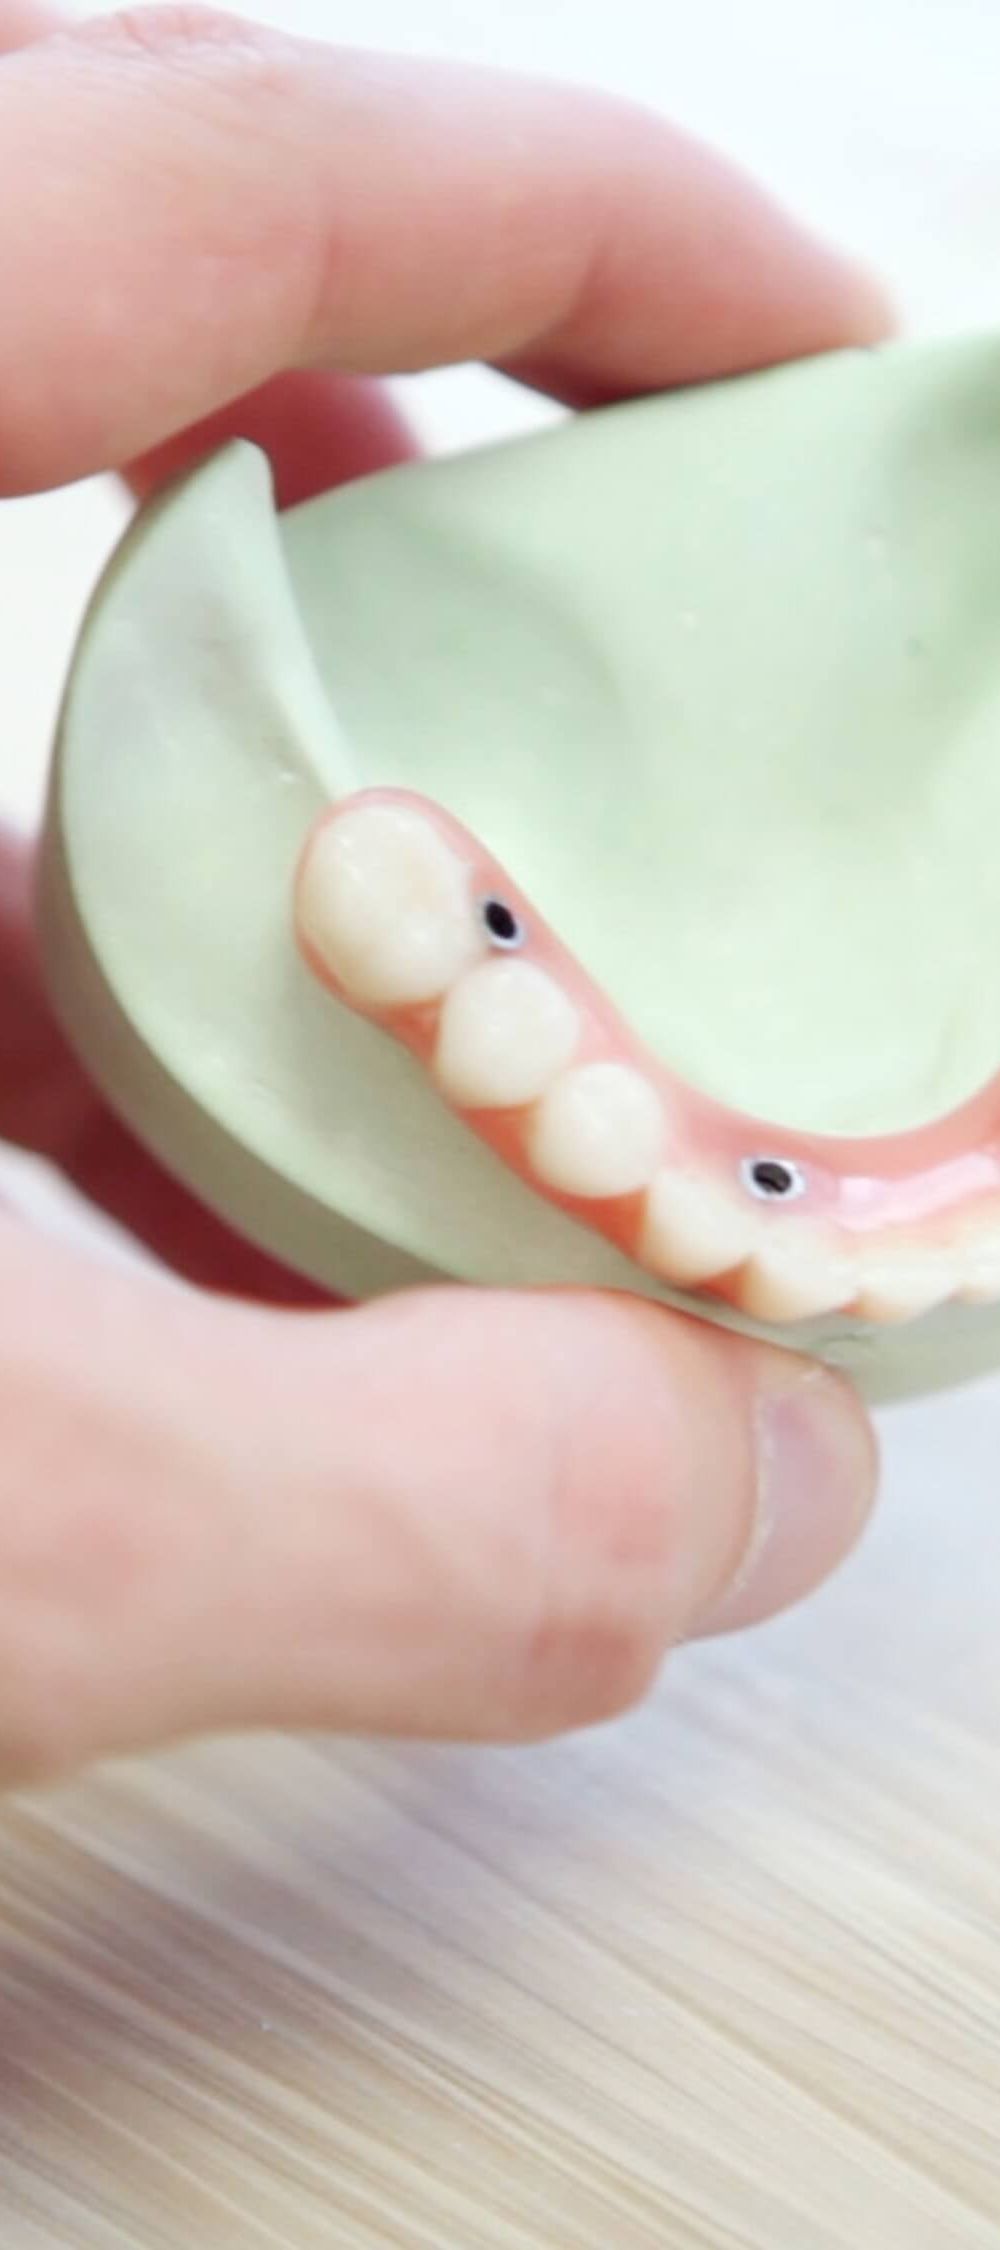 Avantatges de la pròtesi dental híbrida